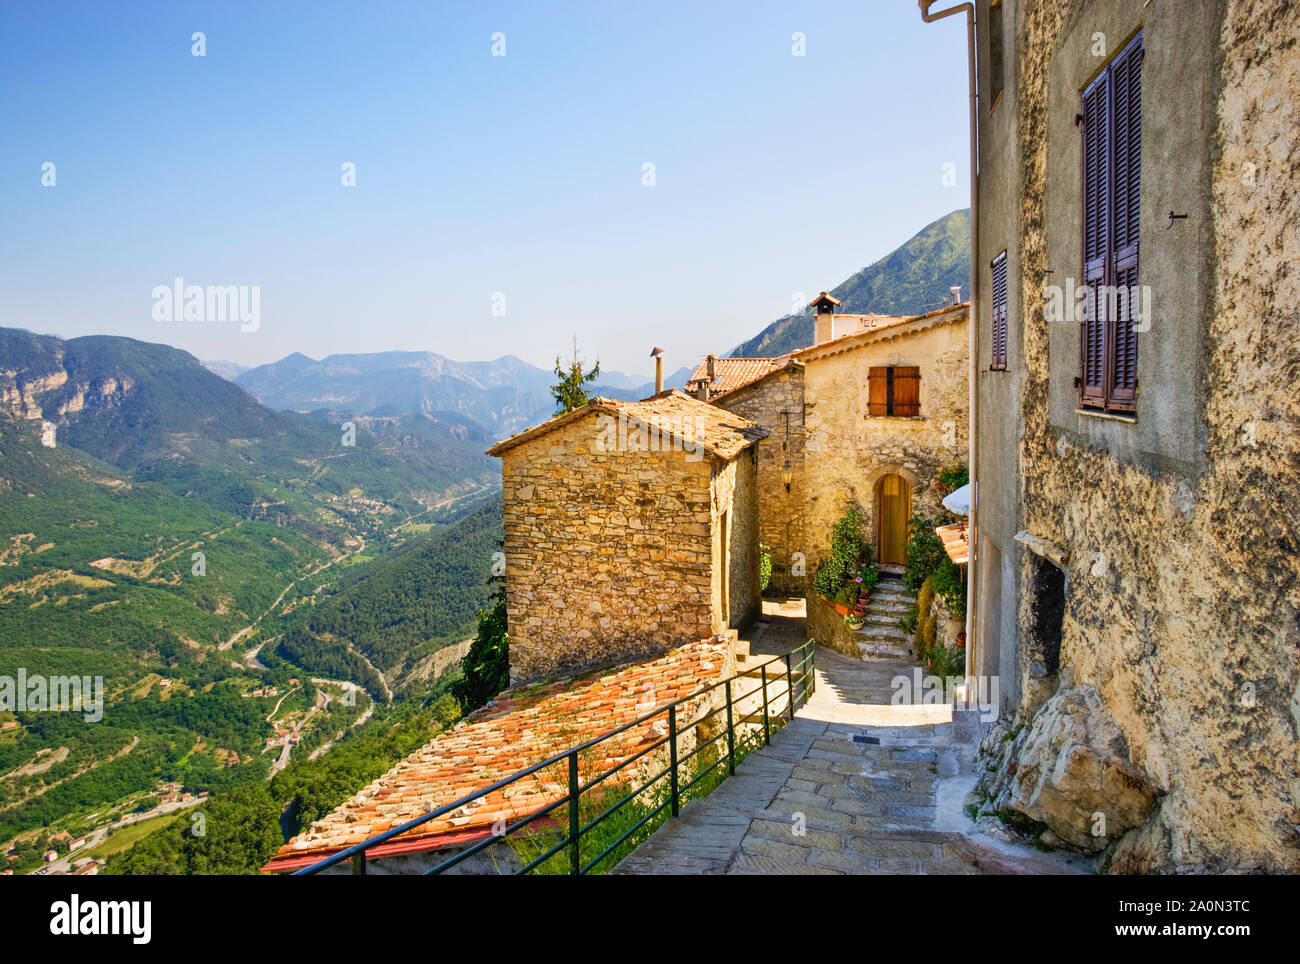 Alpes montagne village de Thiéry, Alpes Maritimes, Provence, Sud de la France Banque D'Images